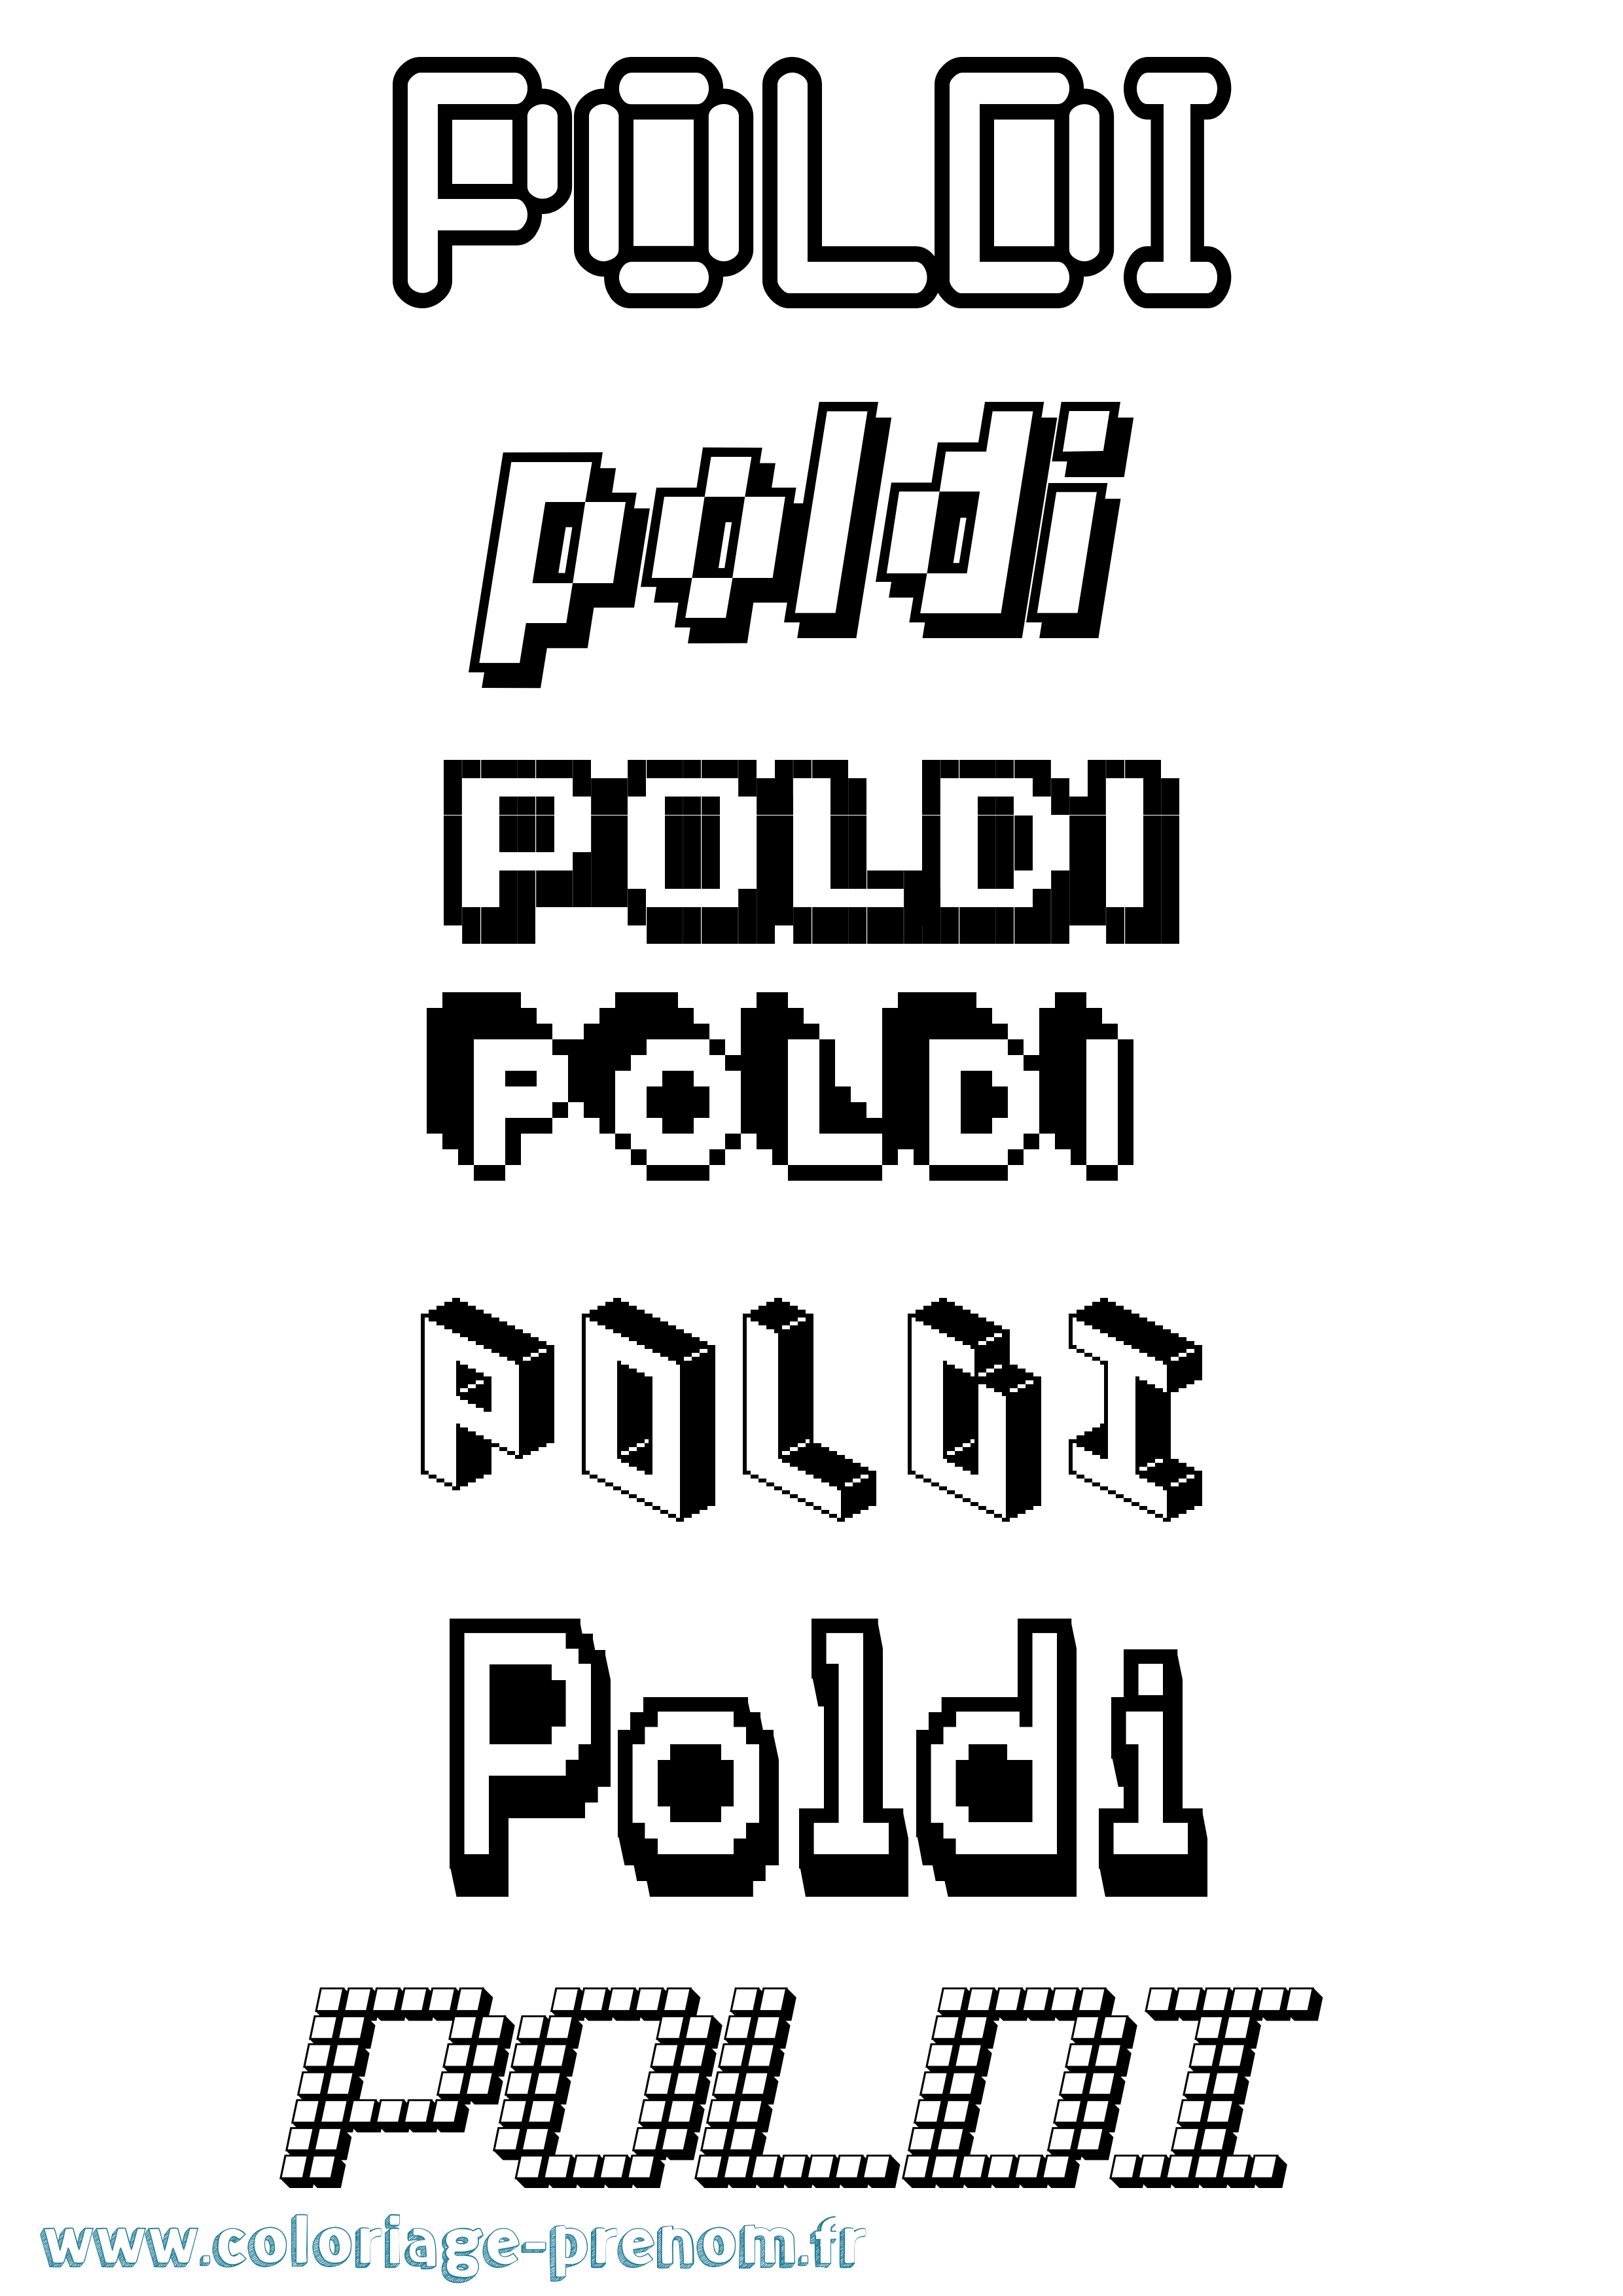 Coloriage prénom Poldi Pixel